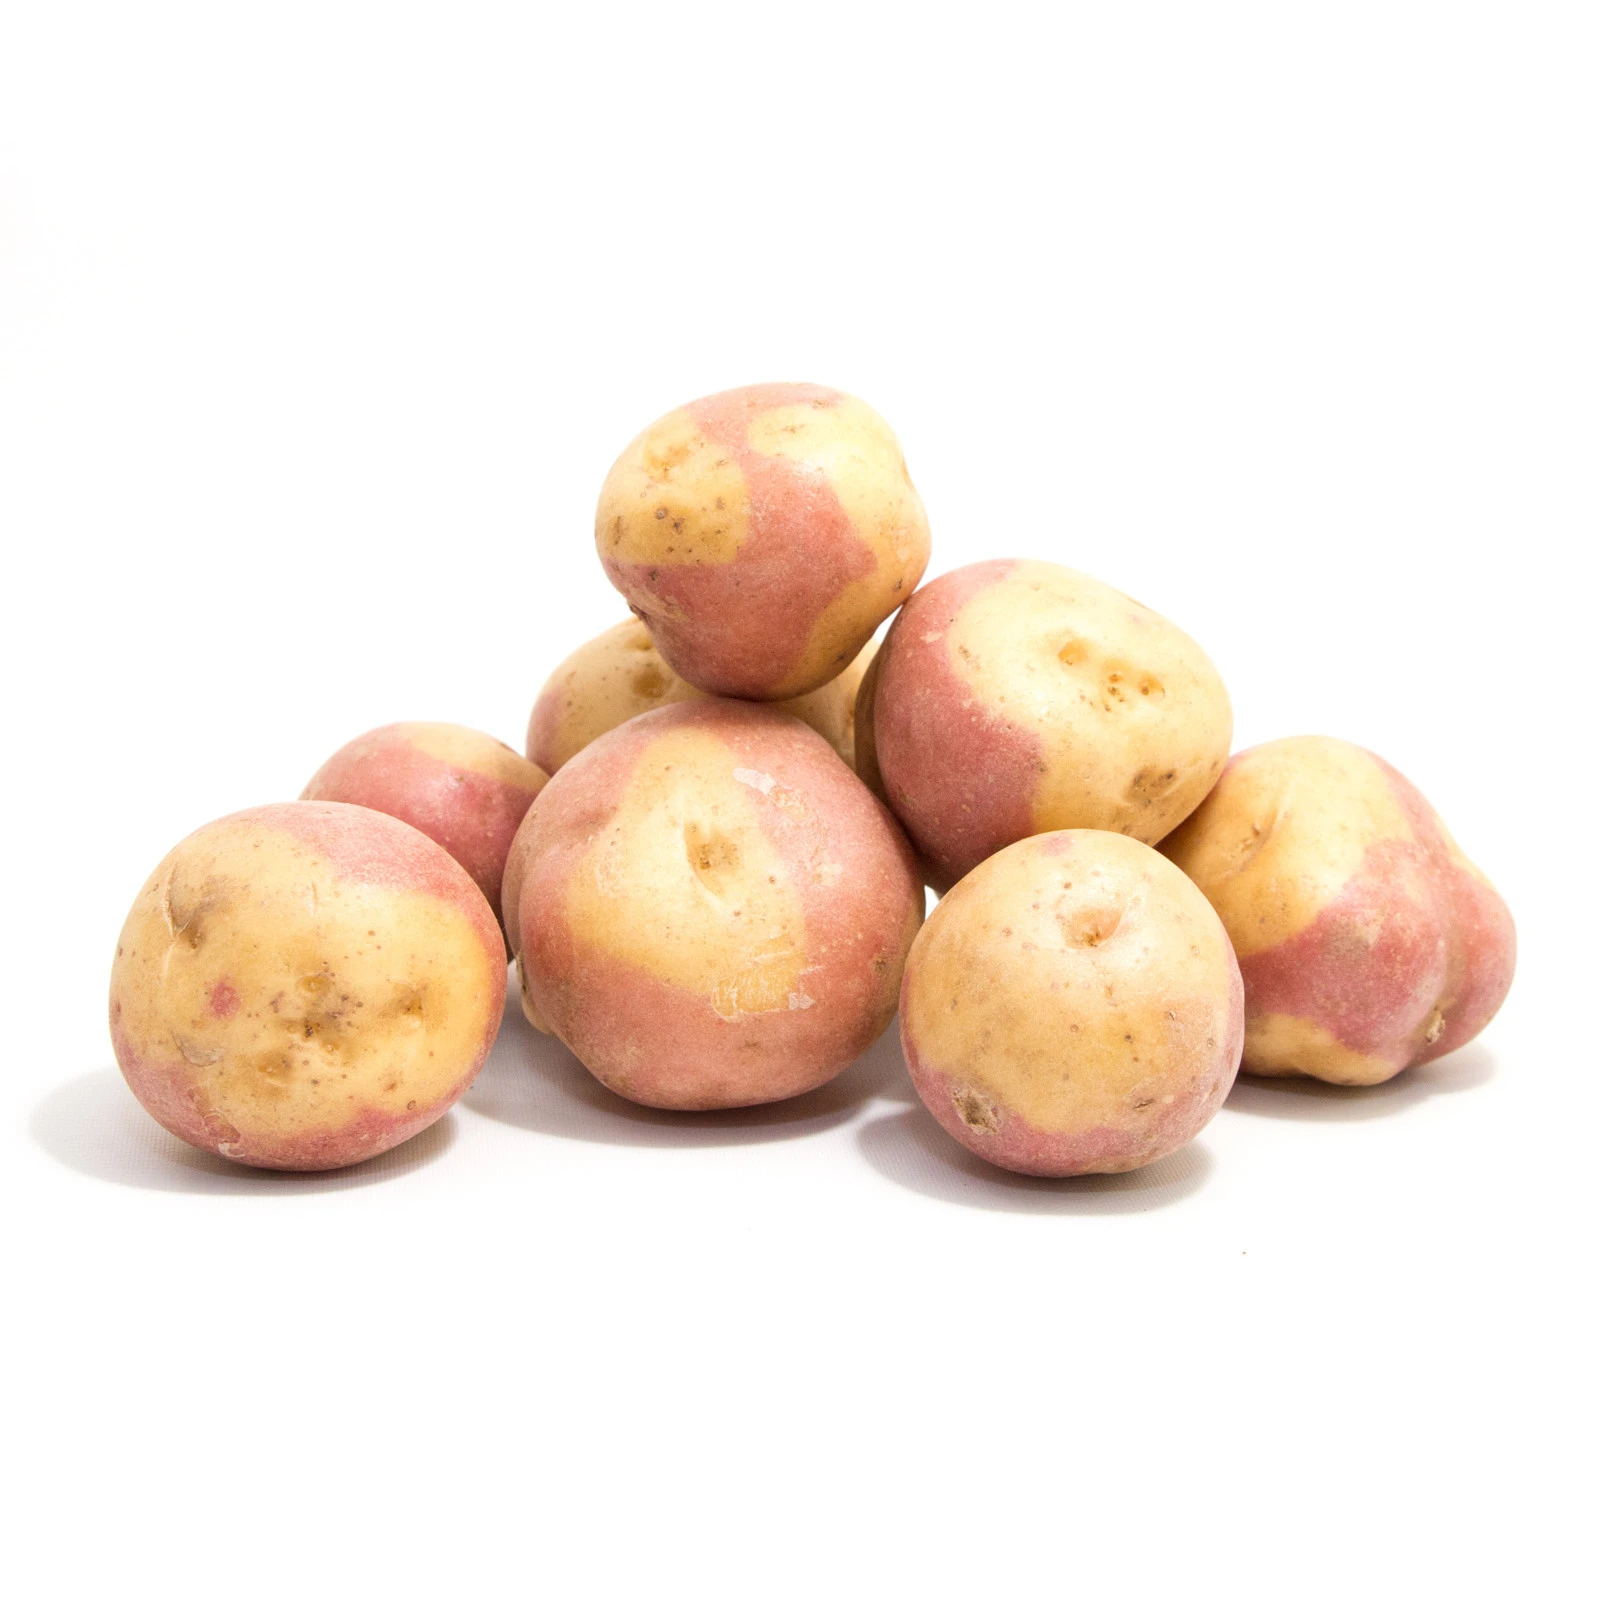 New Season Fresh Potato / New Crop Fresh Potato of United Kingdom